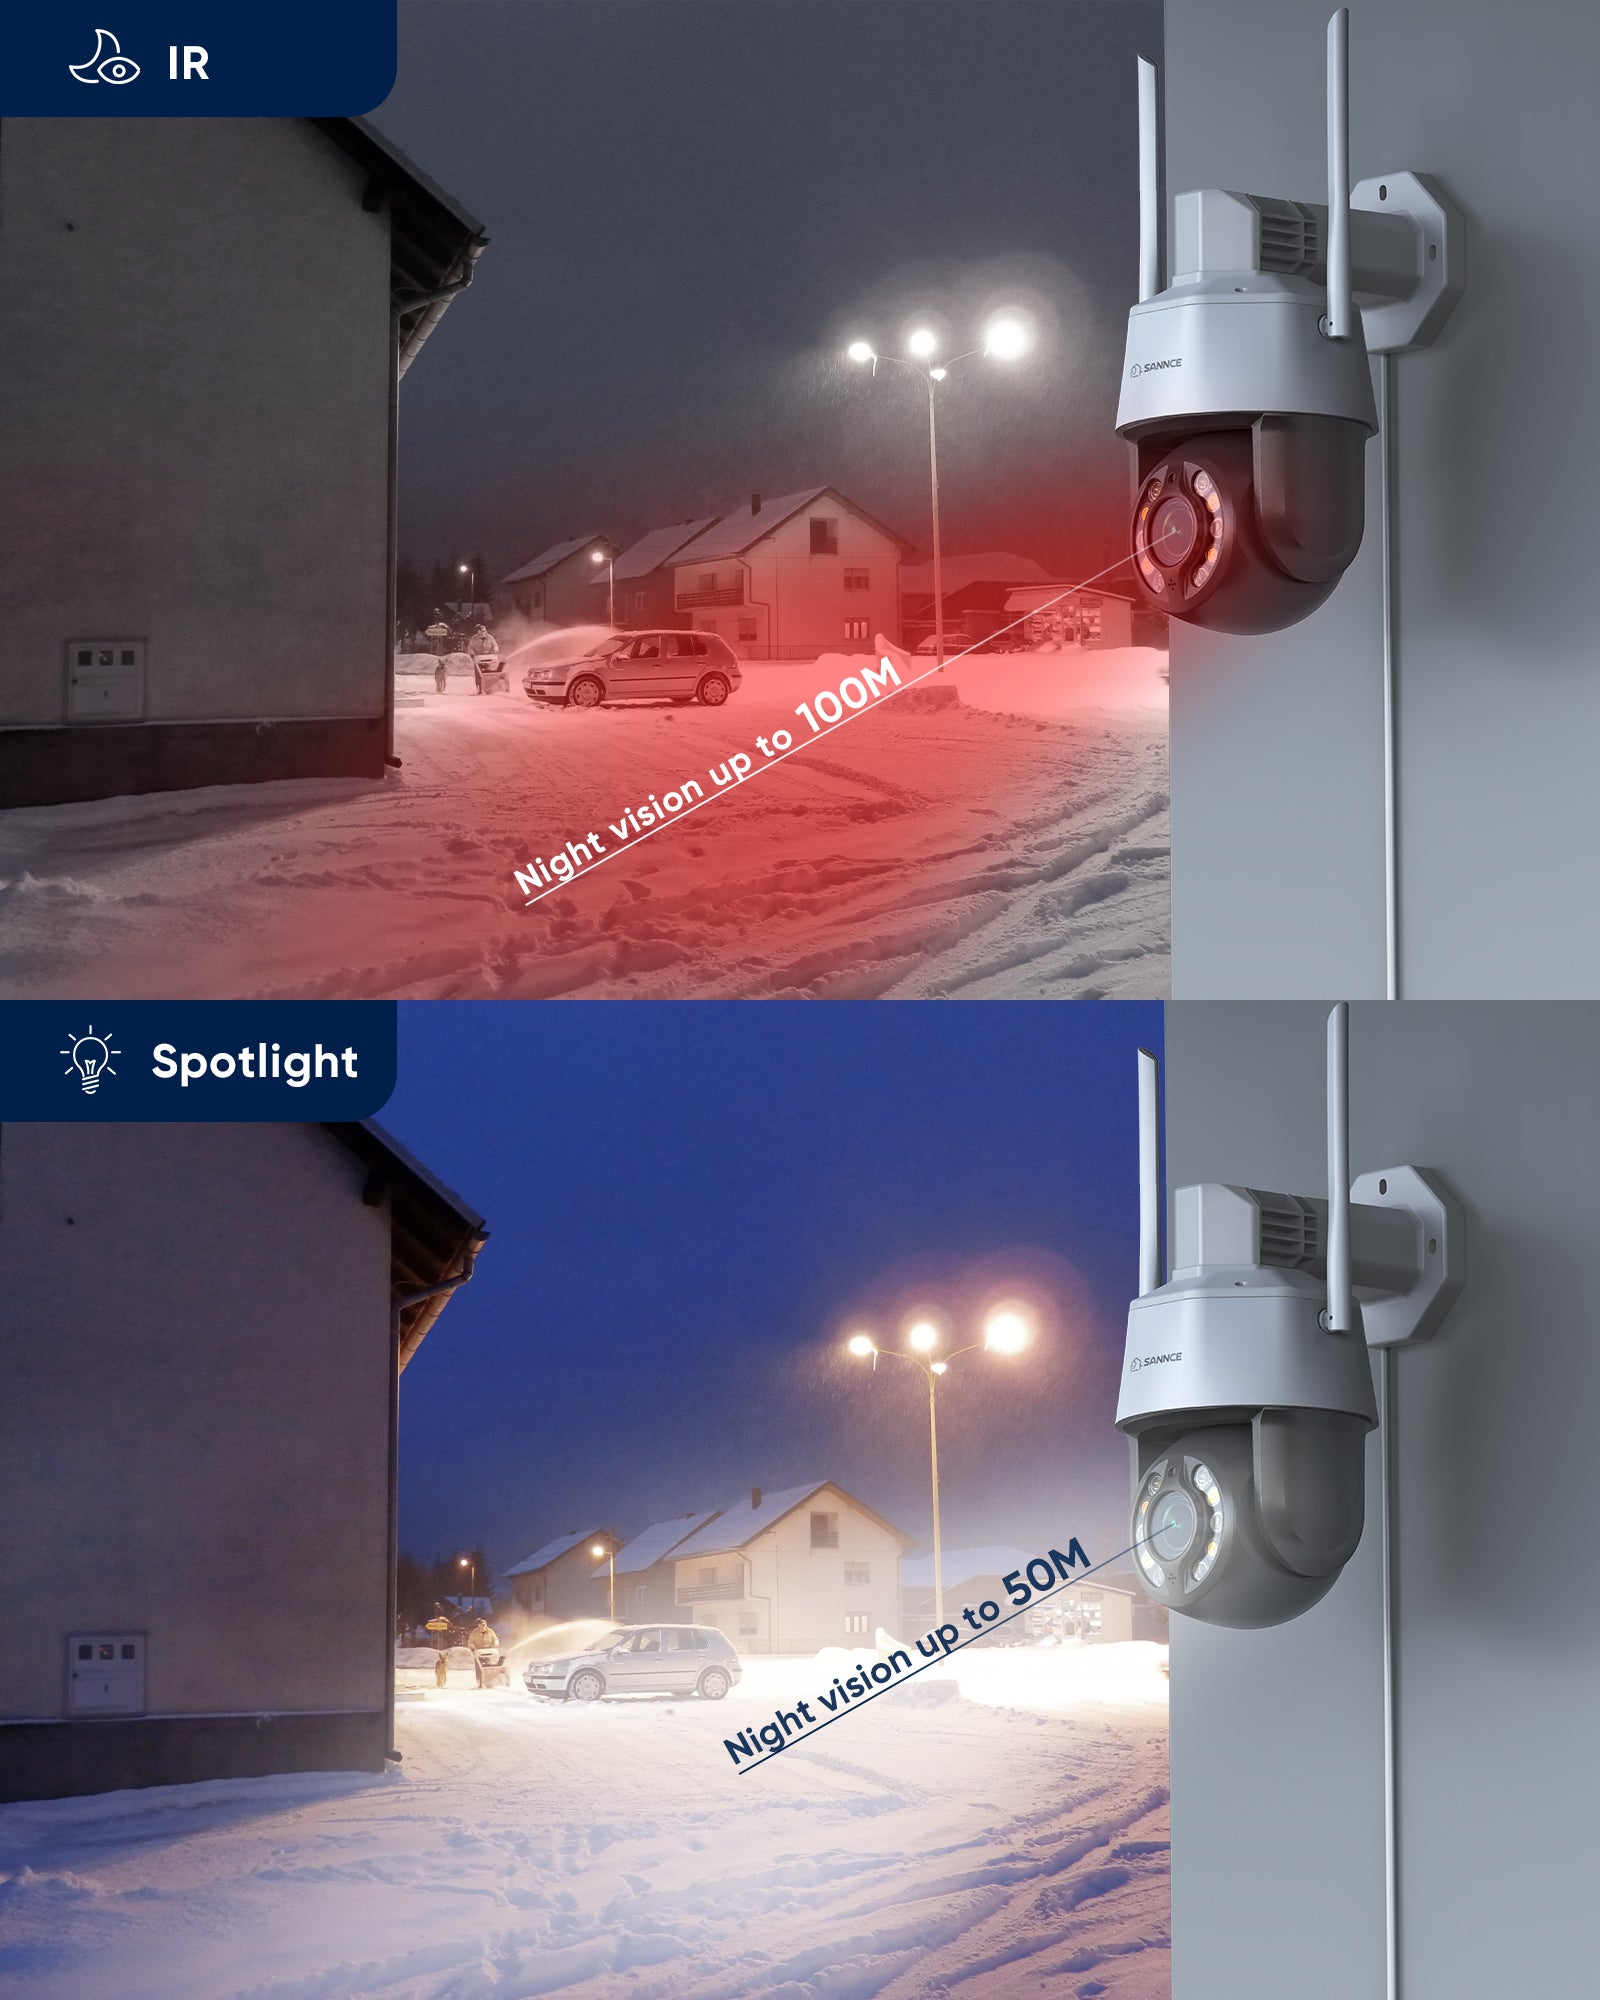 ZILNK PTZ Caméra IP 5MP Dôme sans fil extérieur, Surveillance vidéo en  plein air avec une caméra de sécurité Super HD 1920P, 2843